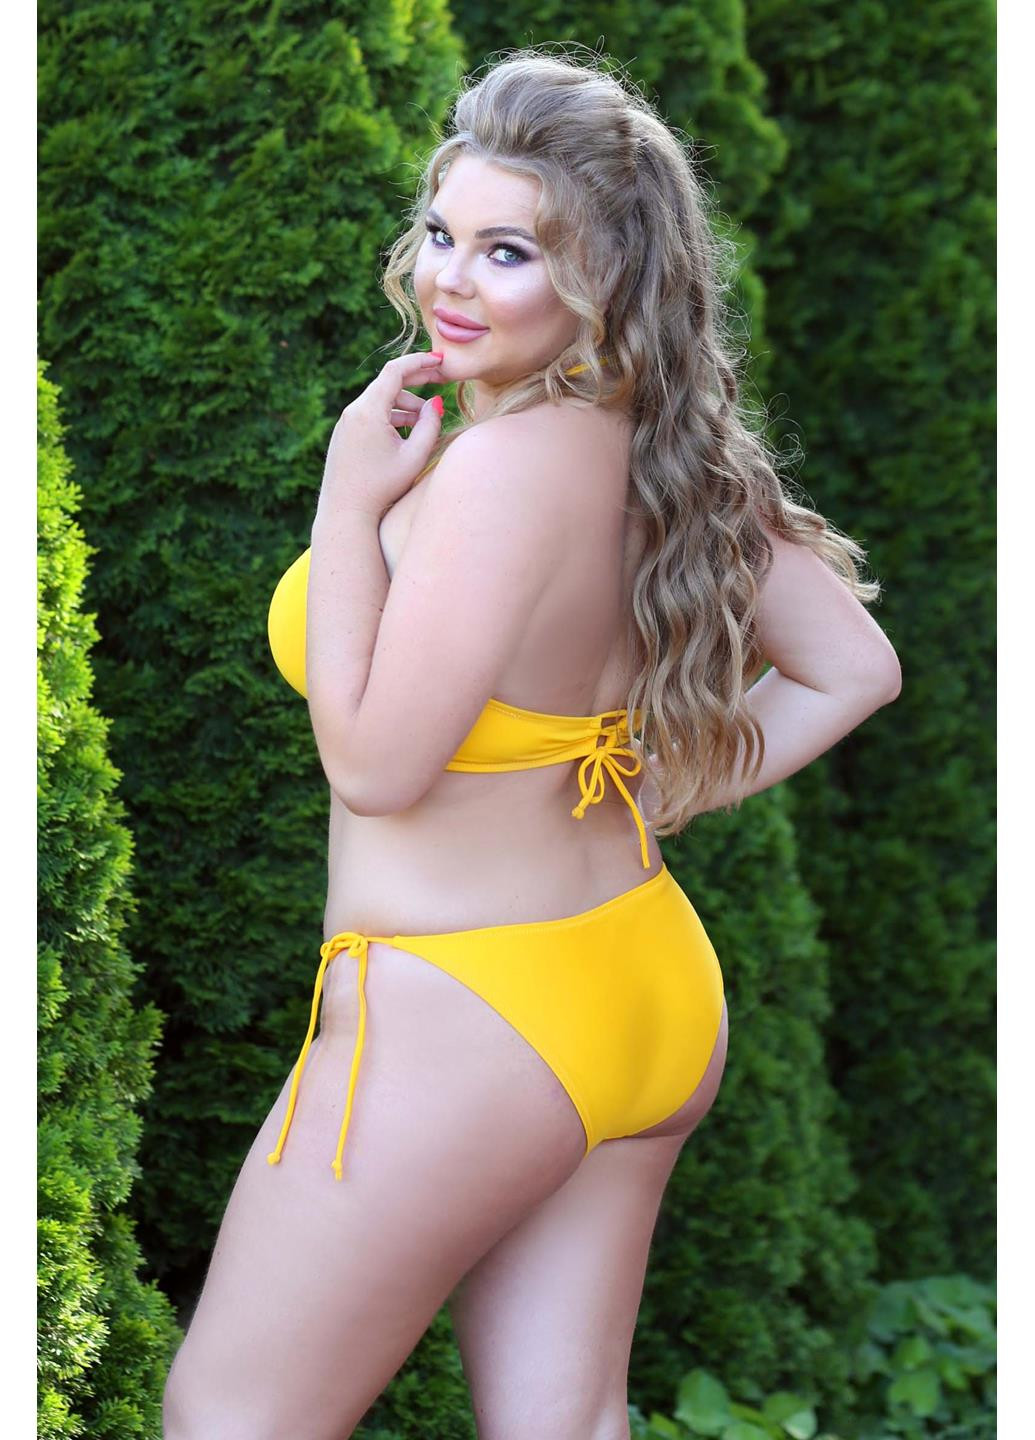 Желтый демисезонный купальник plus size бикини, раздельный, бандо Katrin